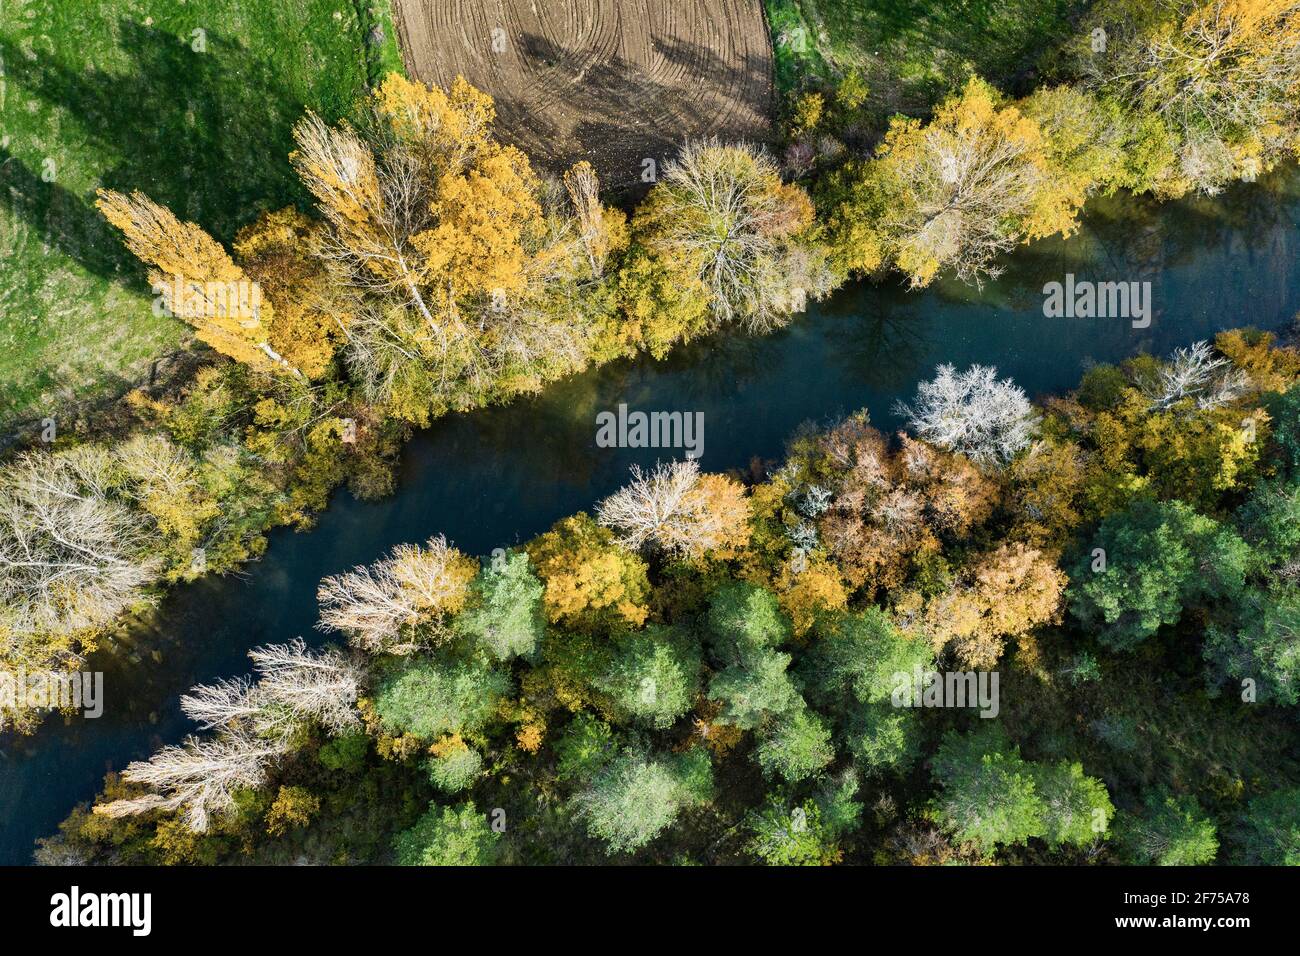 Vista aérea de un río con vegetación ribereña en otoño. Foto de stock